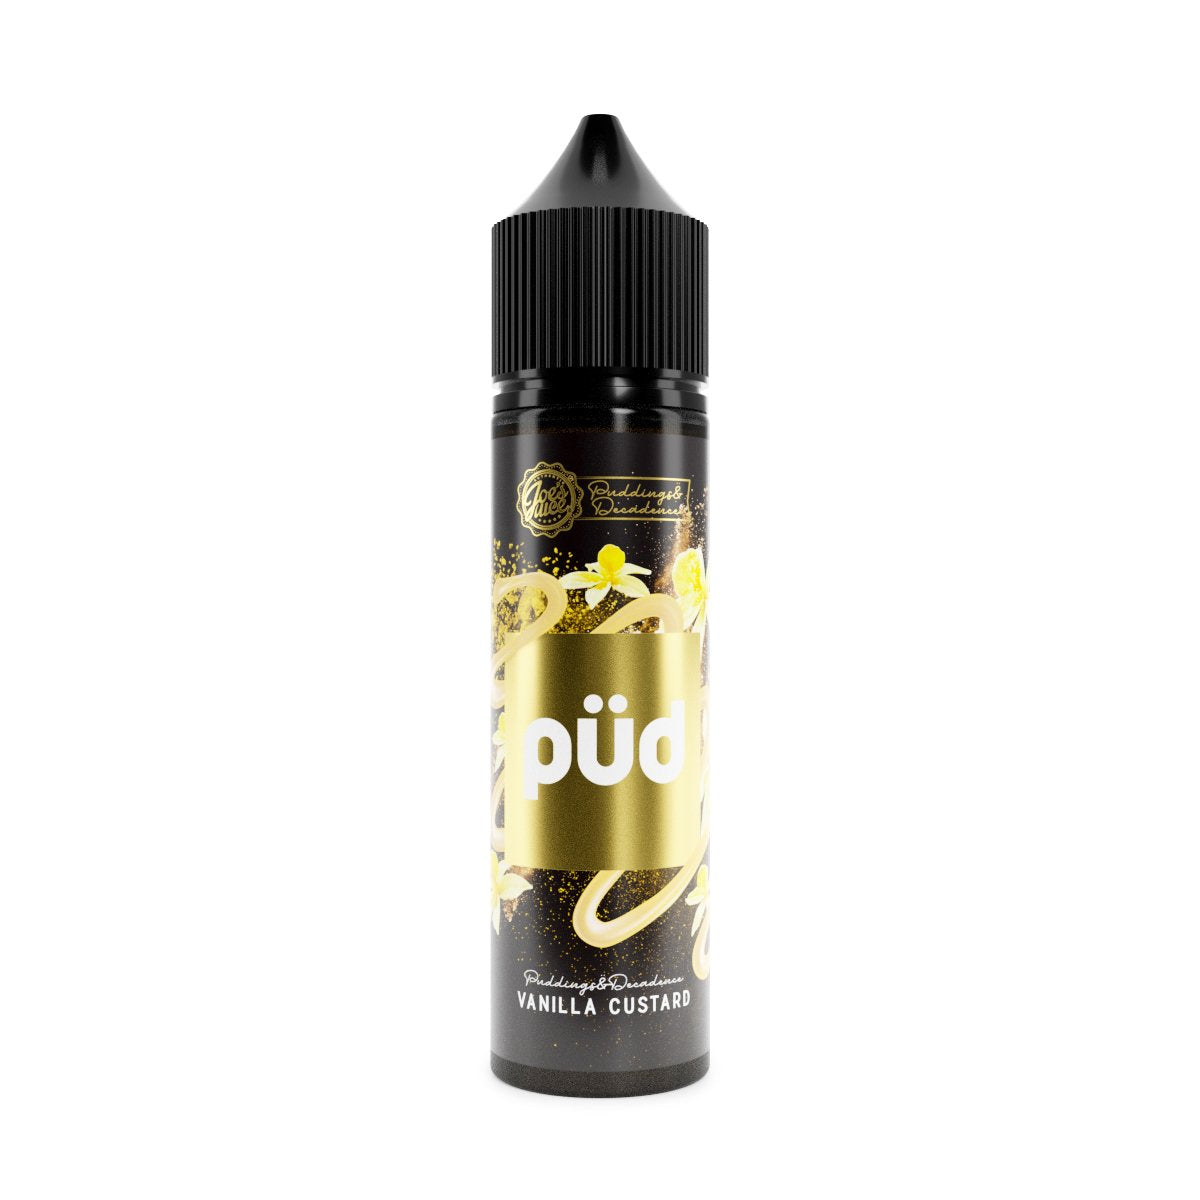 Pud Pudding & Decadence Vanilla Custard 0mg 50ml Shortfill E-Liquid